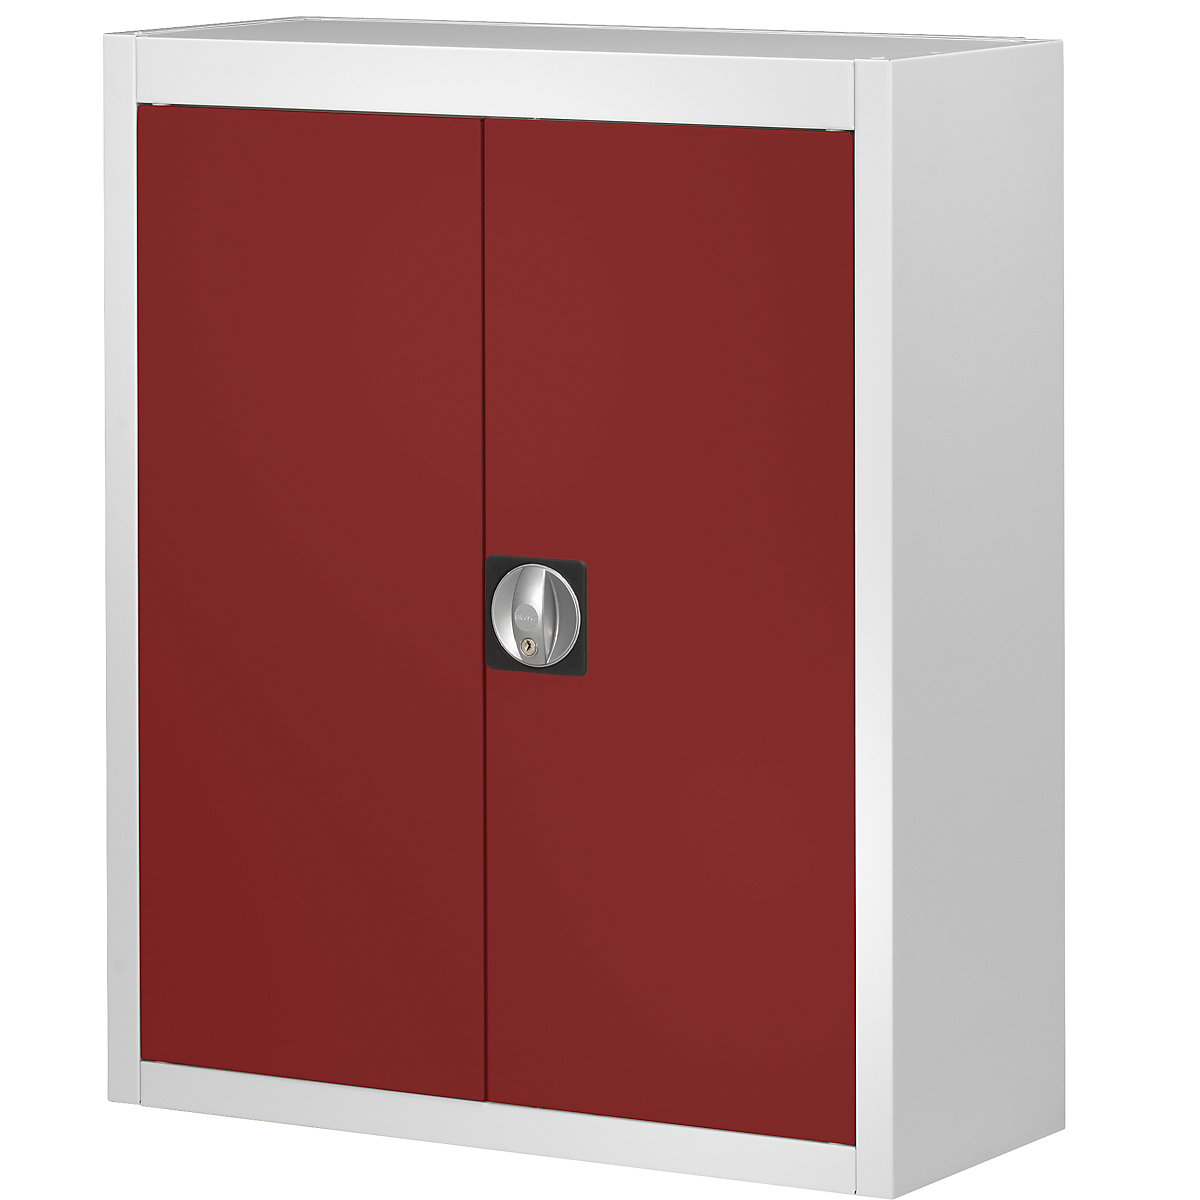 Magazijnkast, zonder magazijnbakken – mauser, h x b x d = 820 x 680 x 280 mm, tweekleurig, kastframe grijs, deuren rood, vanaf 3 stuks-5